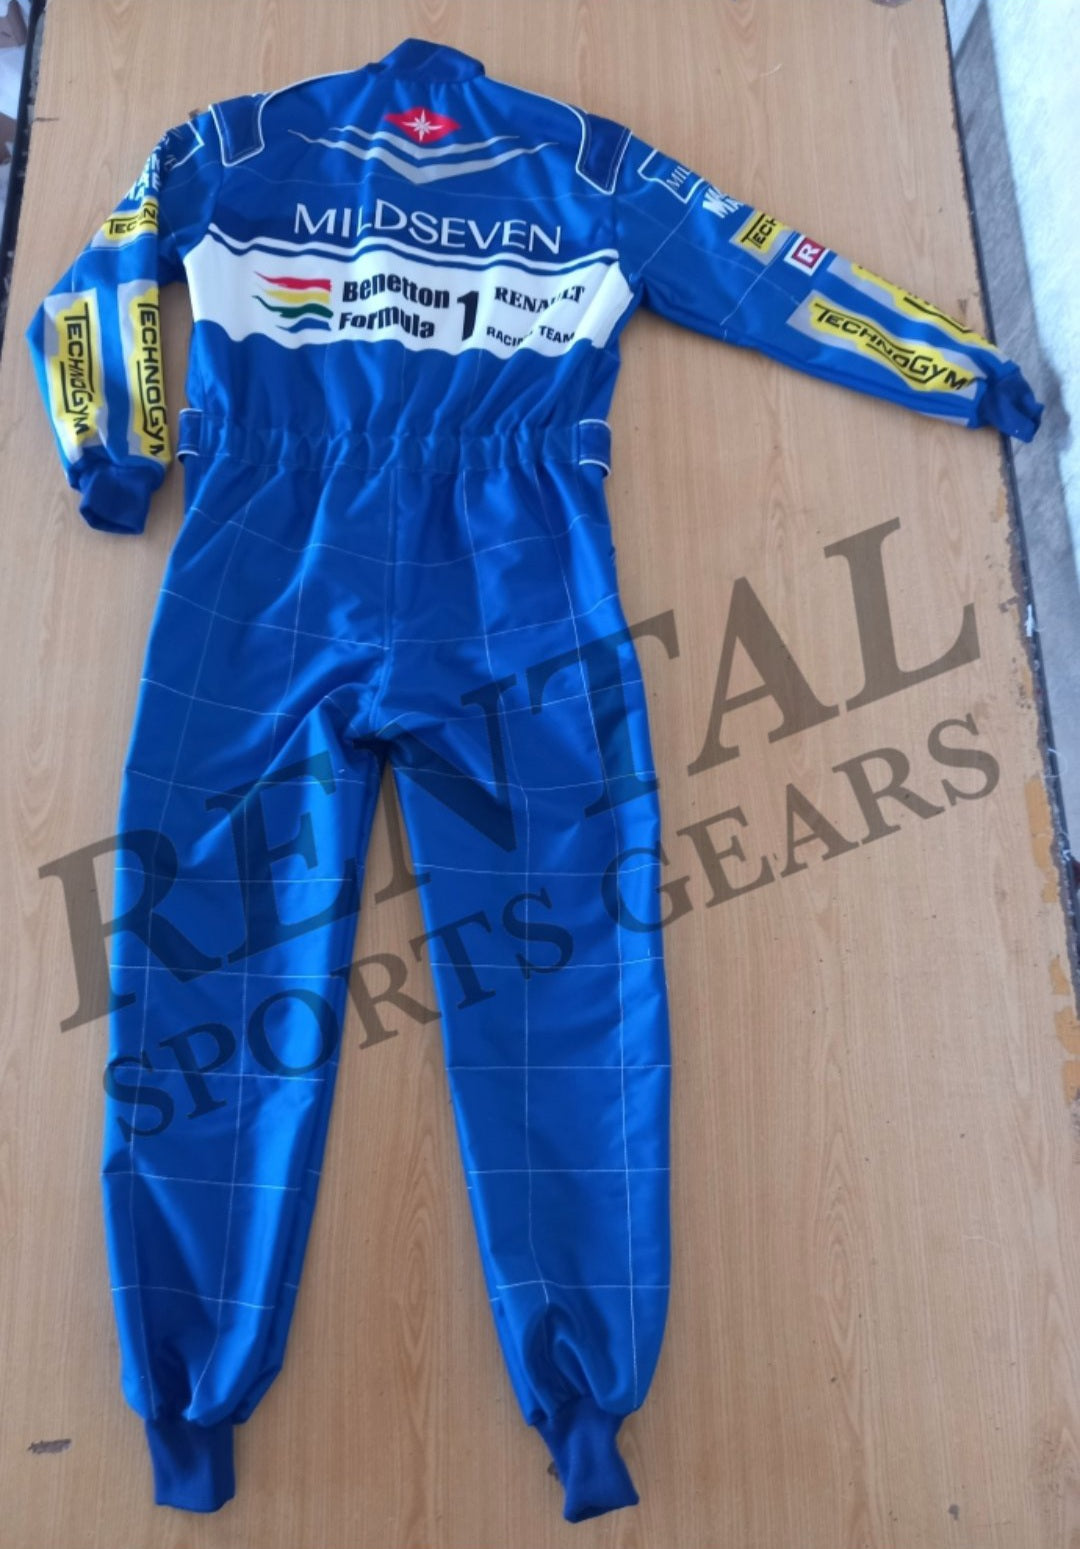 Michael Schumacher 1994 Mild Seven F1 Race Suit - F1 Replica Race Suit